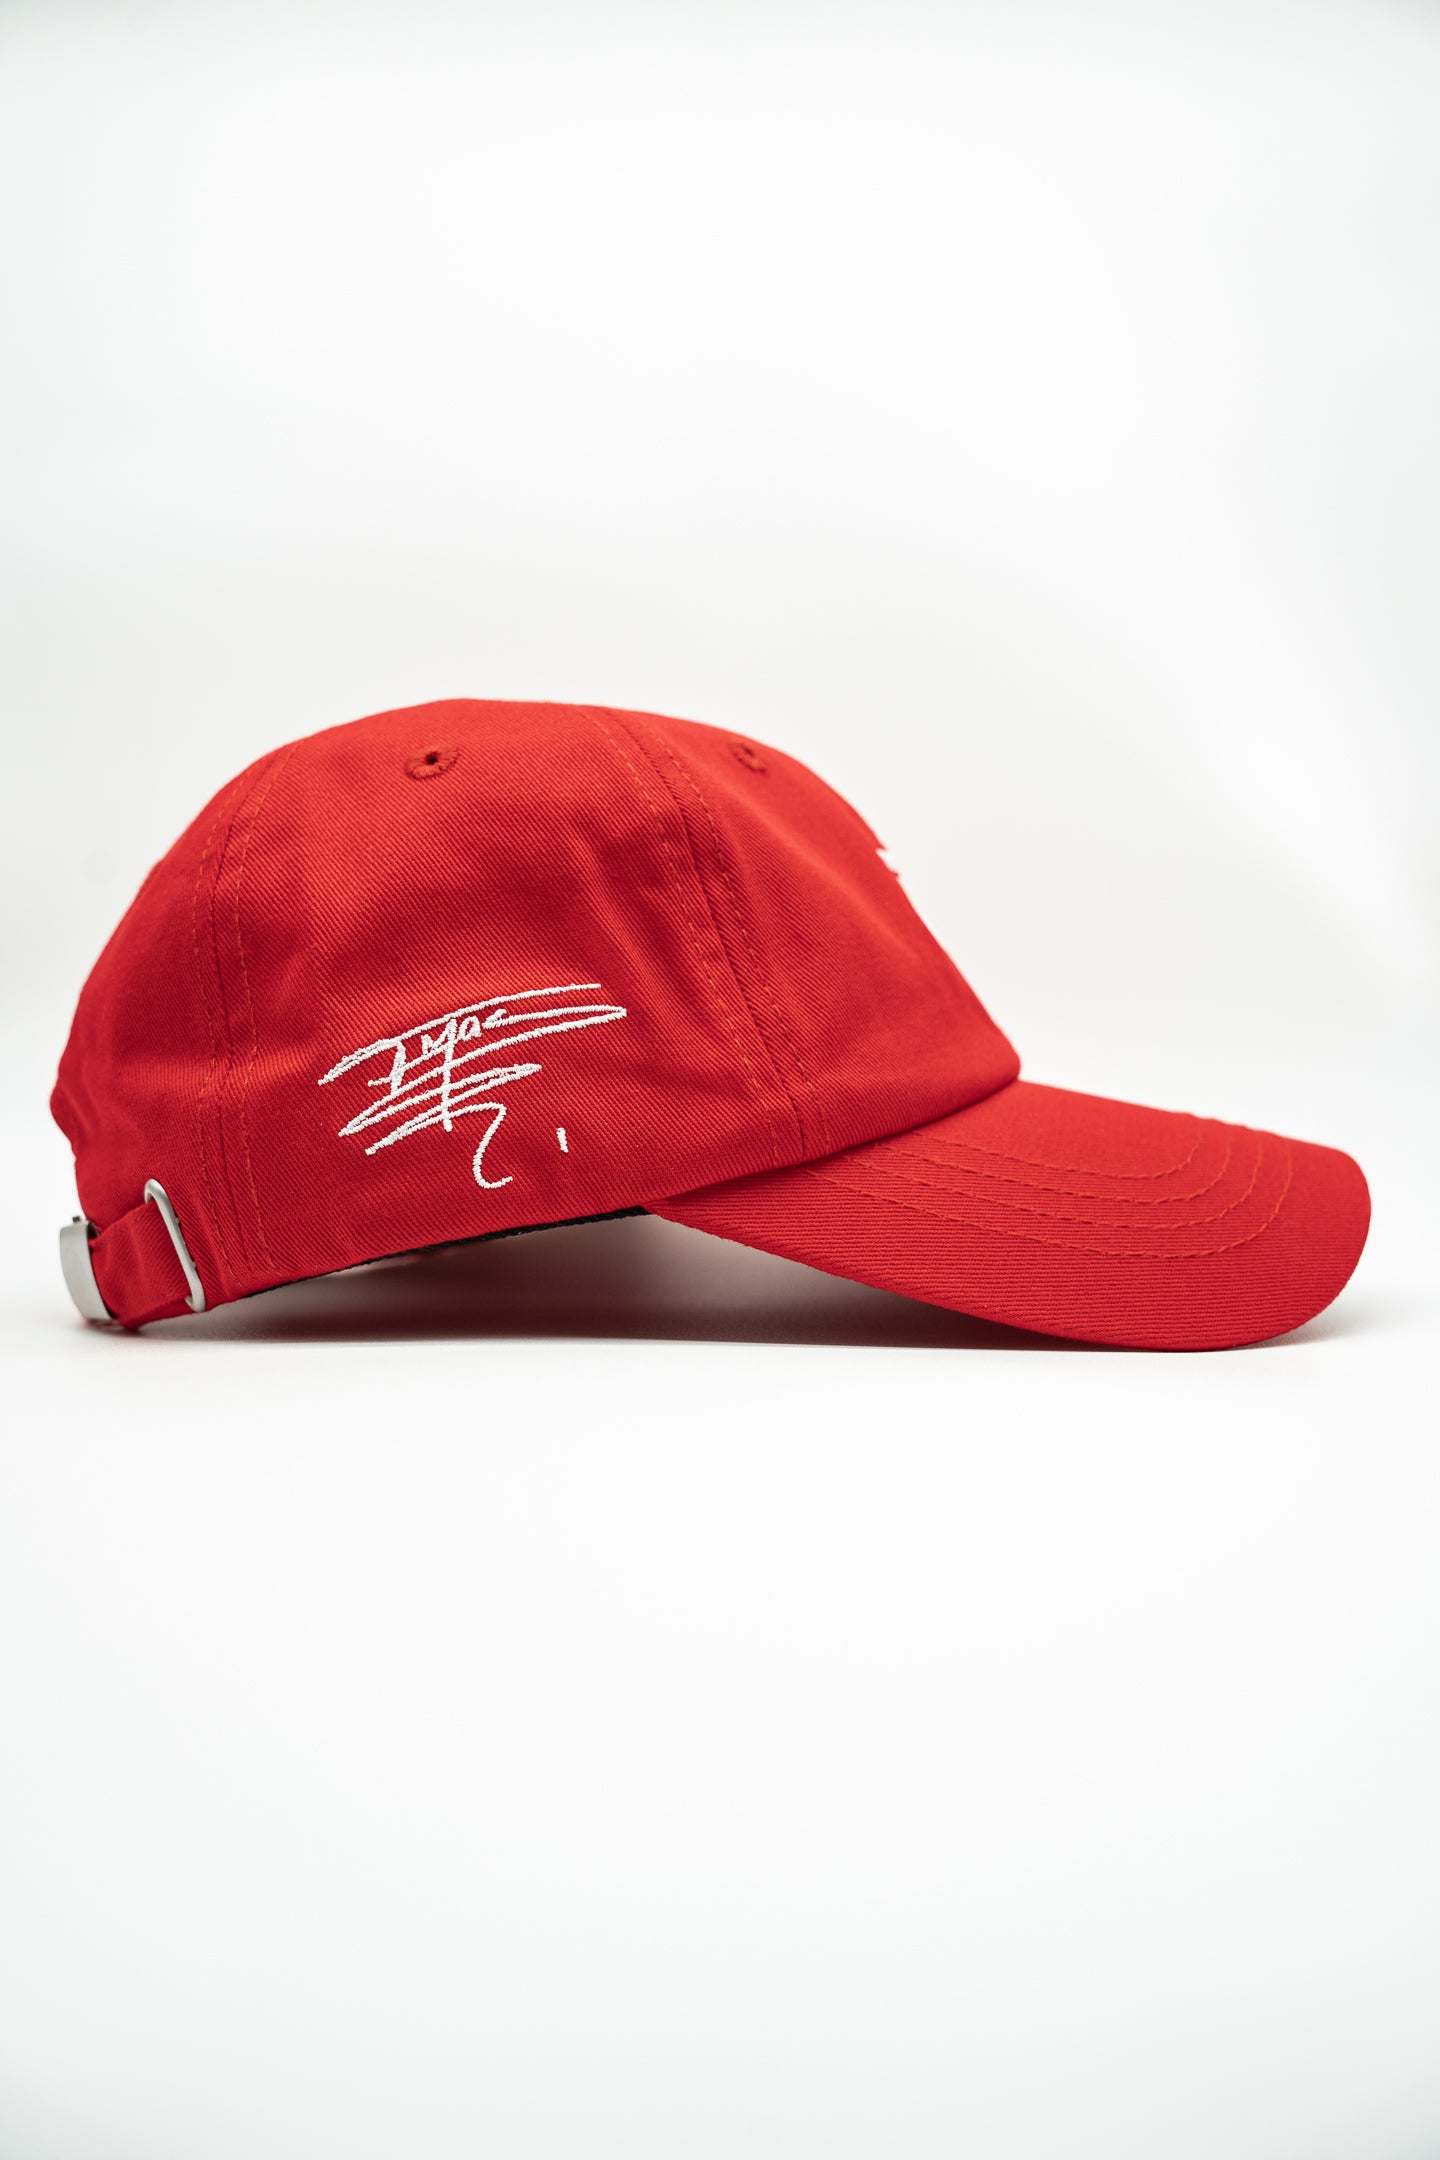 TM1 Red Signature Dad Hat